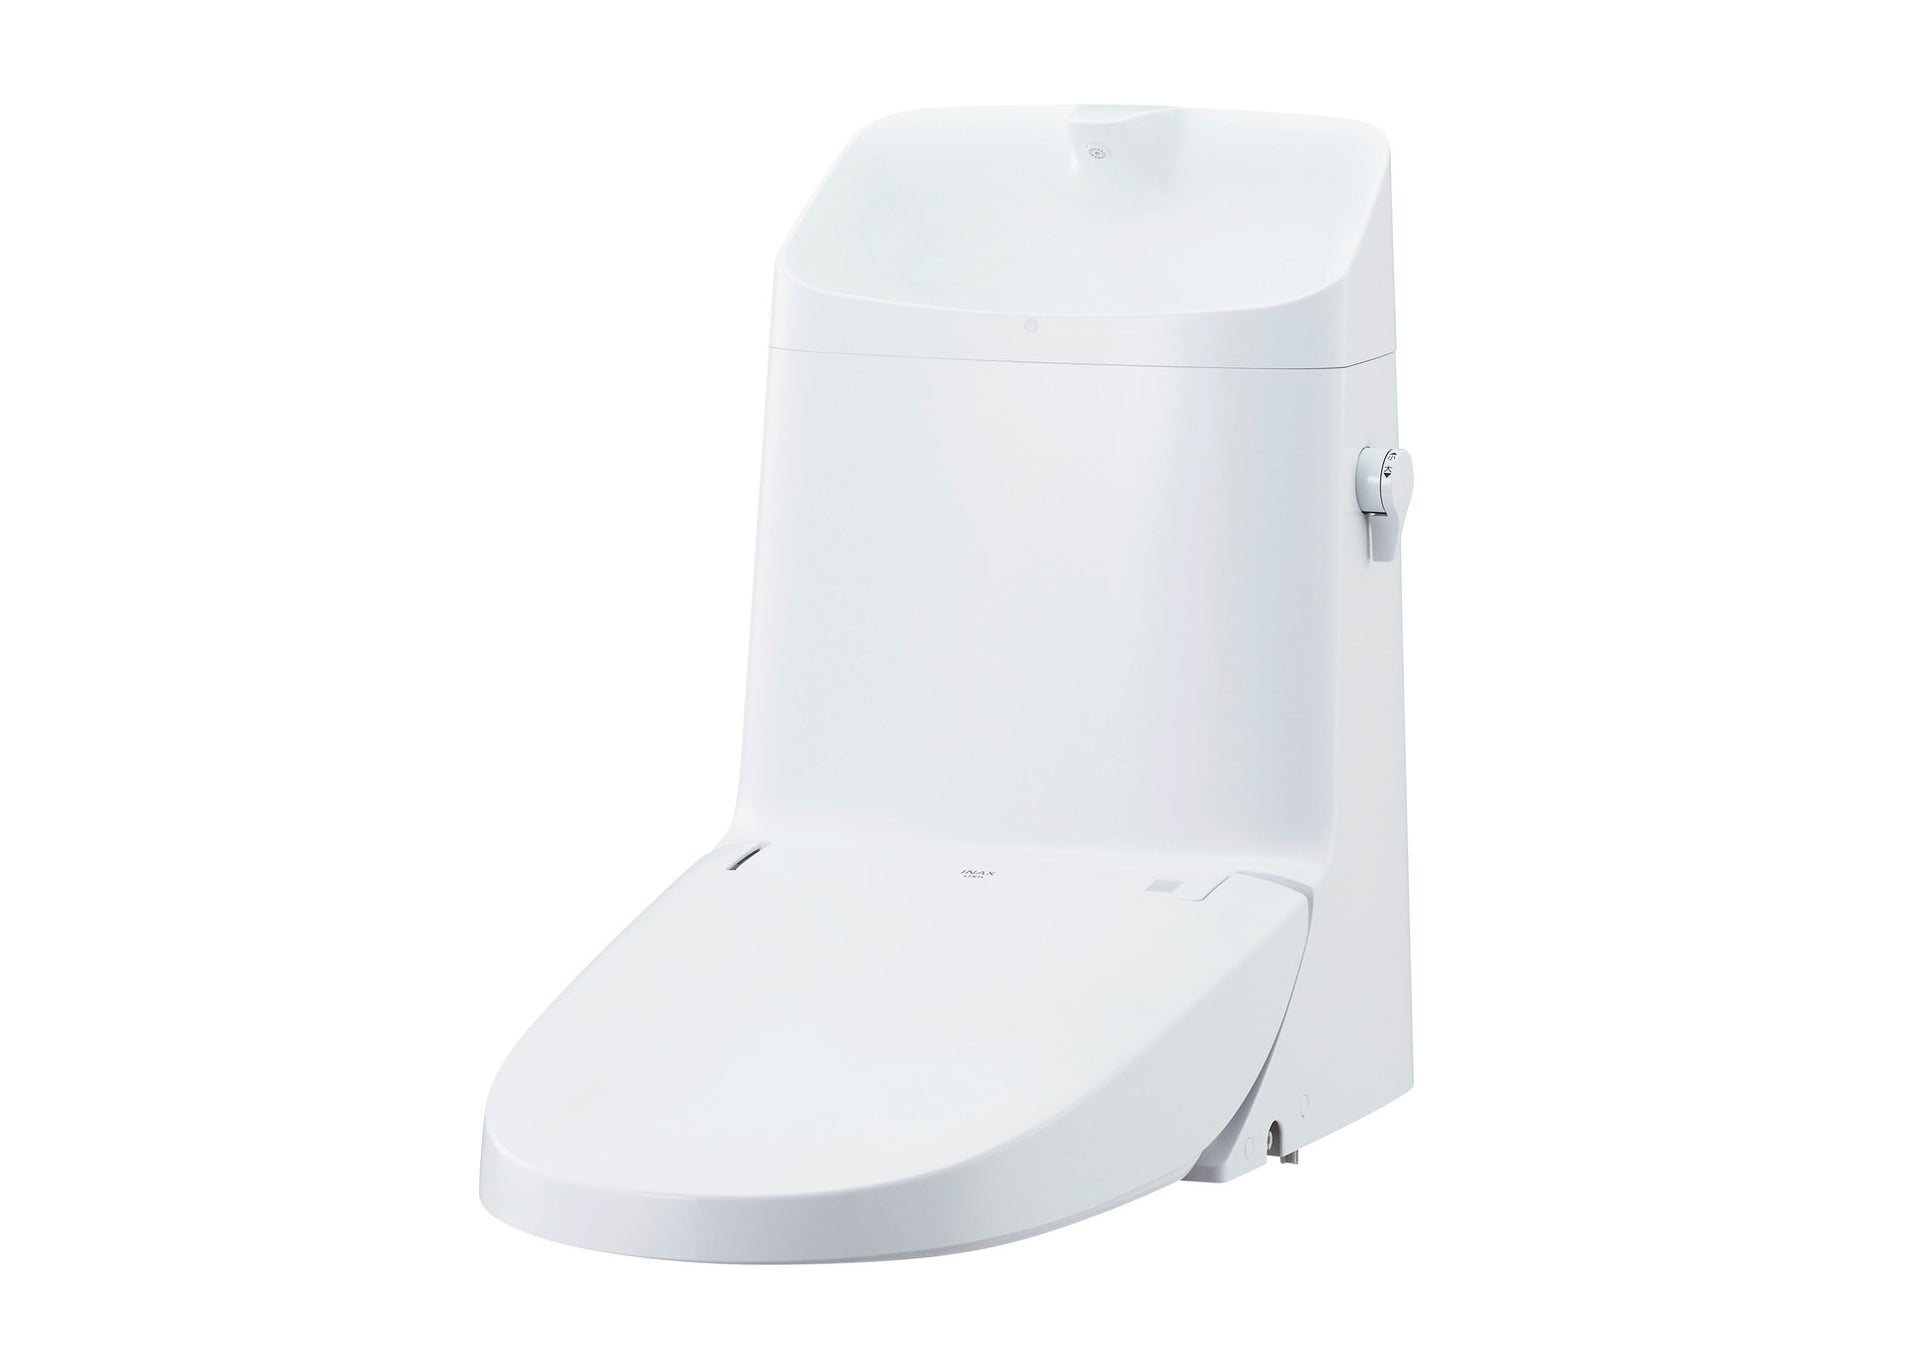 便器一体型シャワートイレにおいて、便器部は残したままシャワートイレ部だけの交換が可能な「リフレッシュシャワートイレ」新発売のサブ画像1